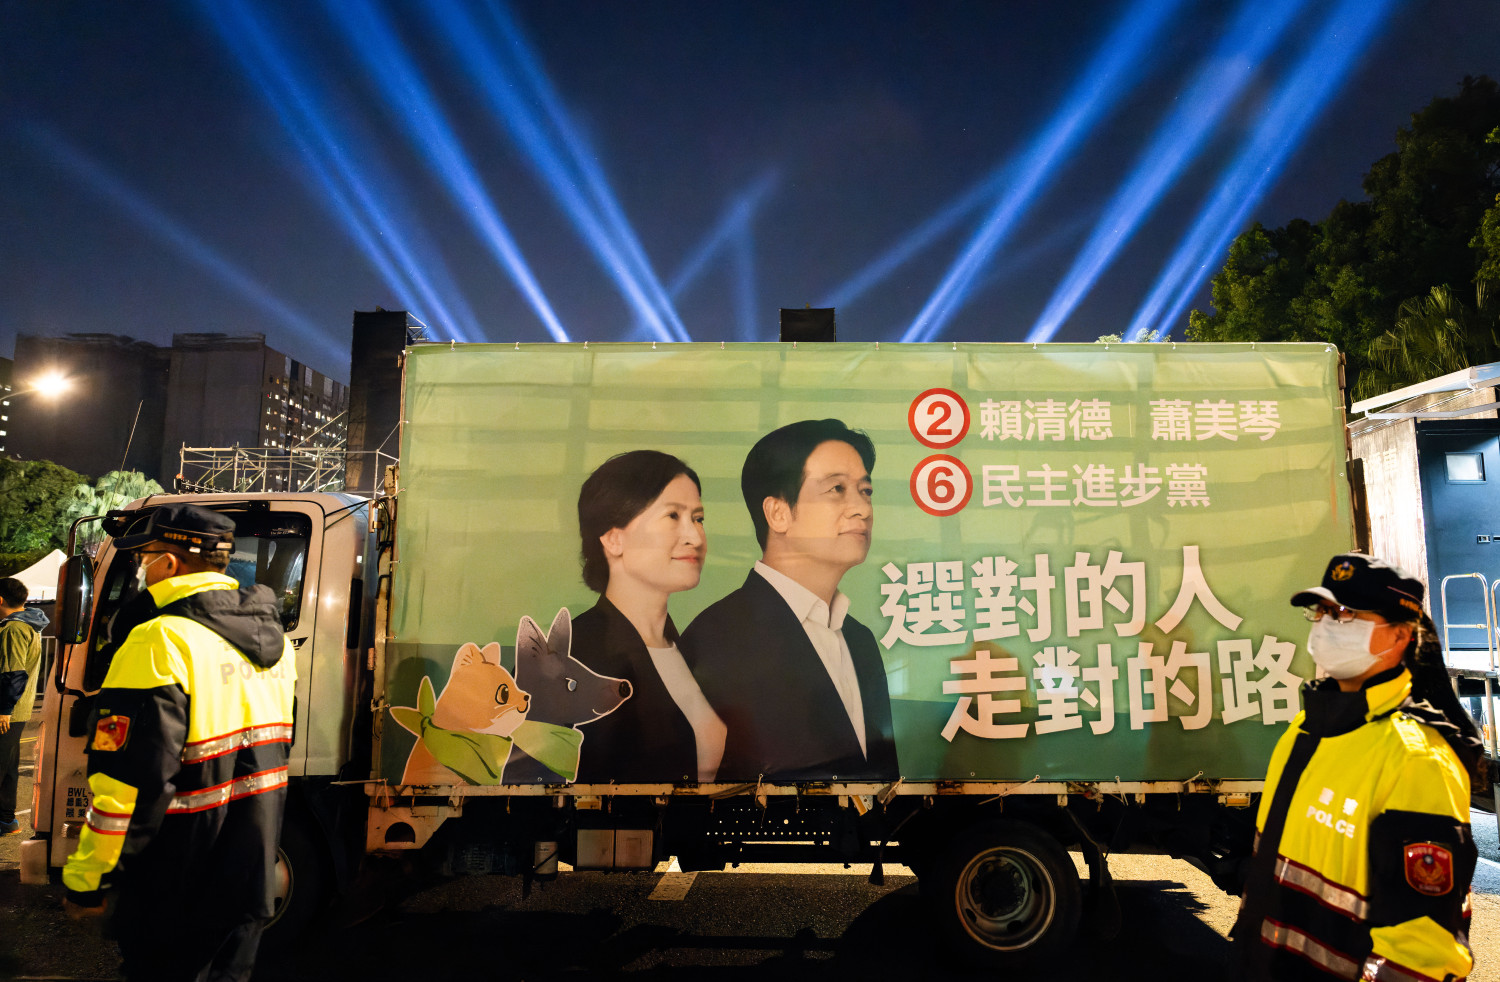 El resultado electoral en Taiwán indica que las tensiones continuarán, pero no irán a más